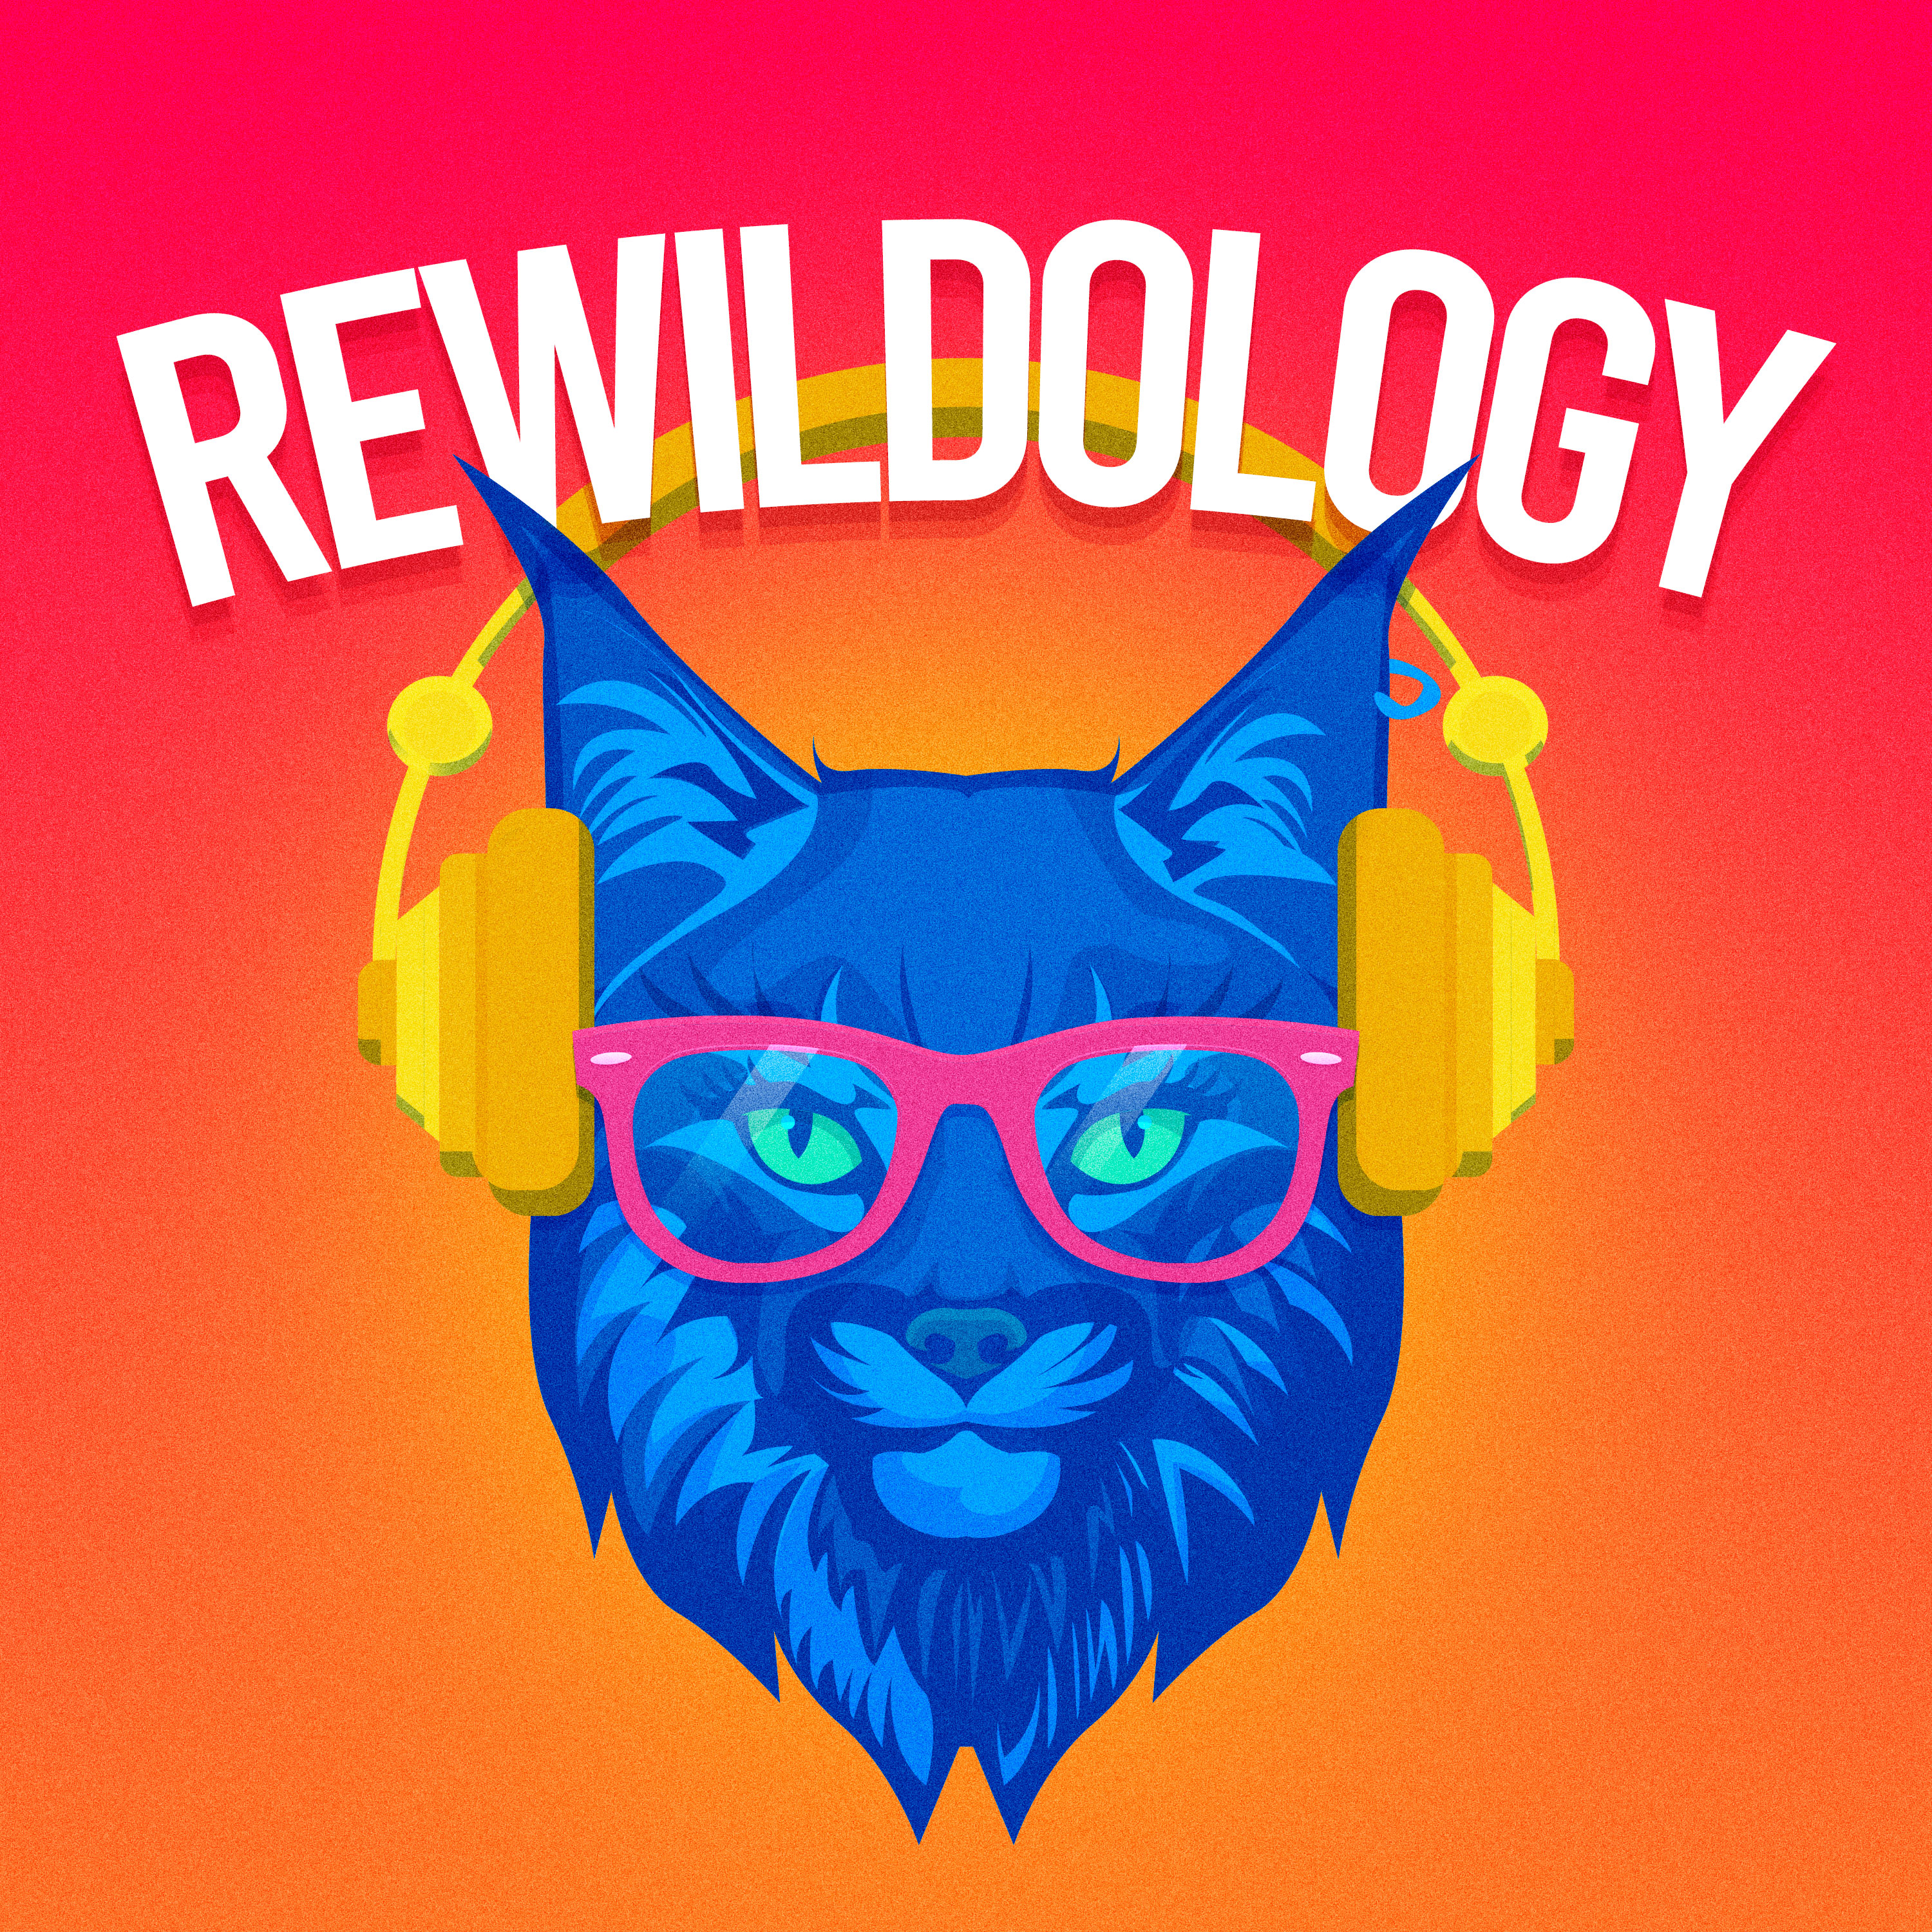 Rewildology